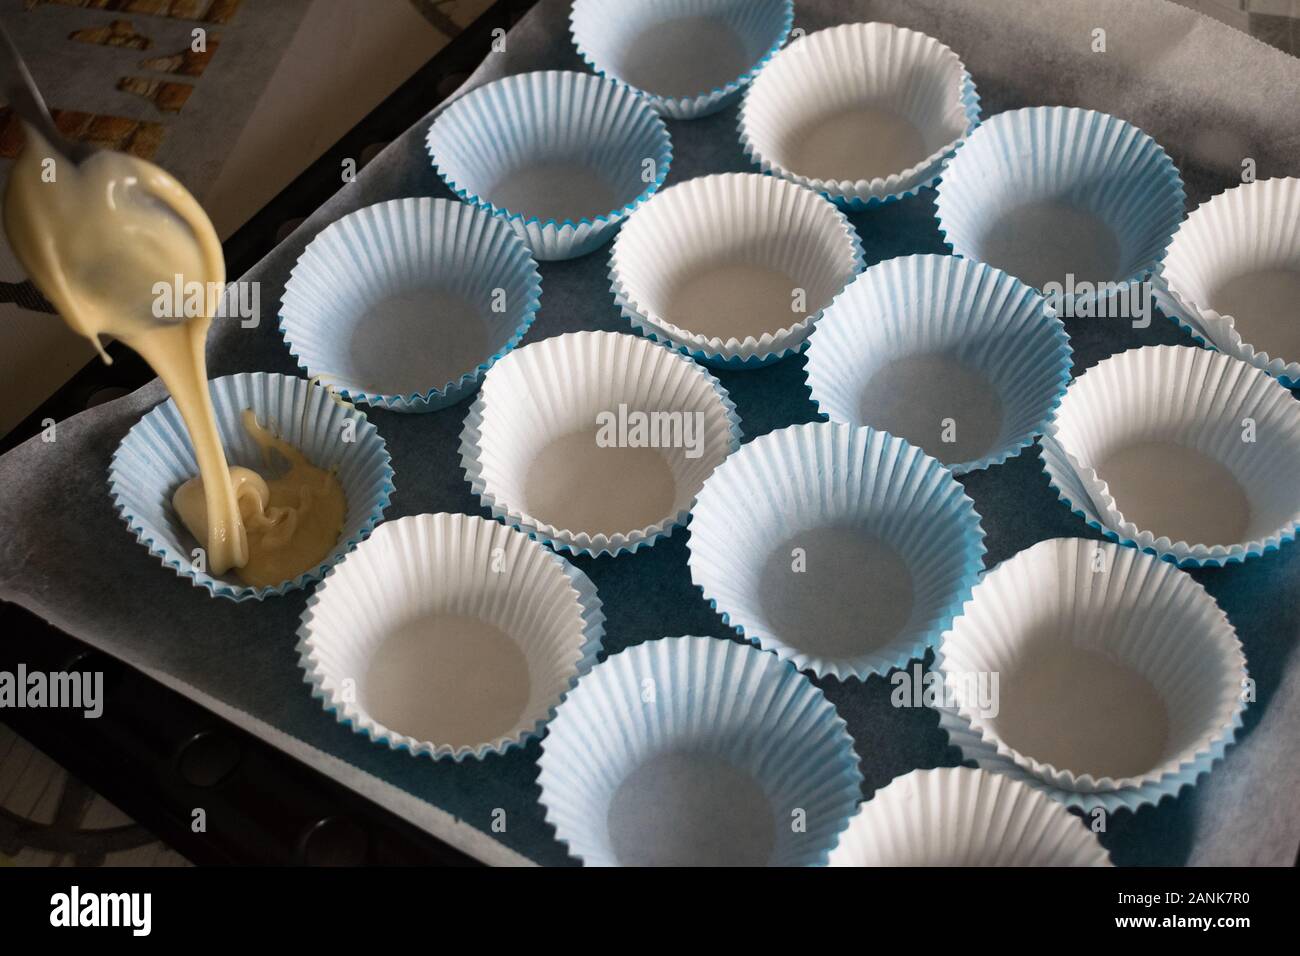 Delicioso Presidente Conjugado Llenar con la masa los moldes de papel para hacer muffins caseros  Fotografía de stock - Alamy